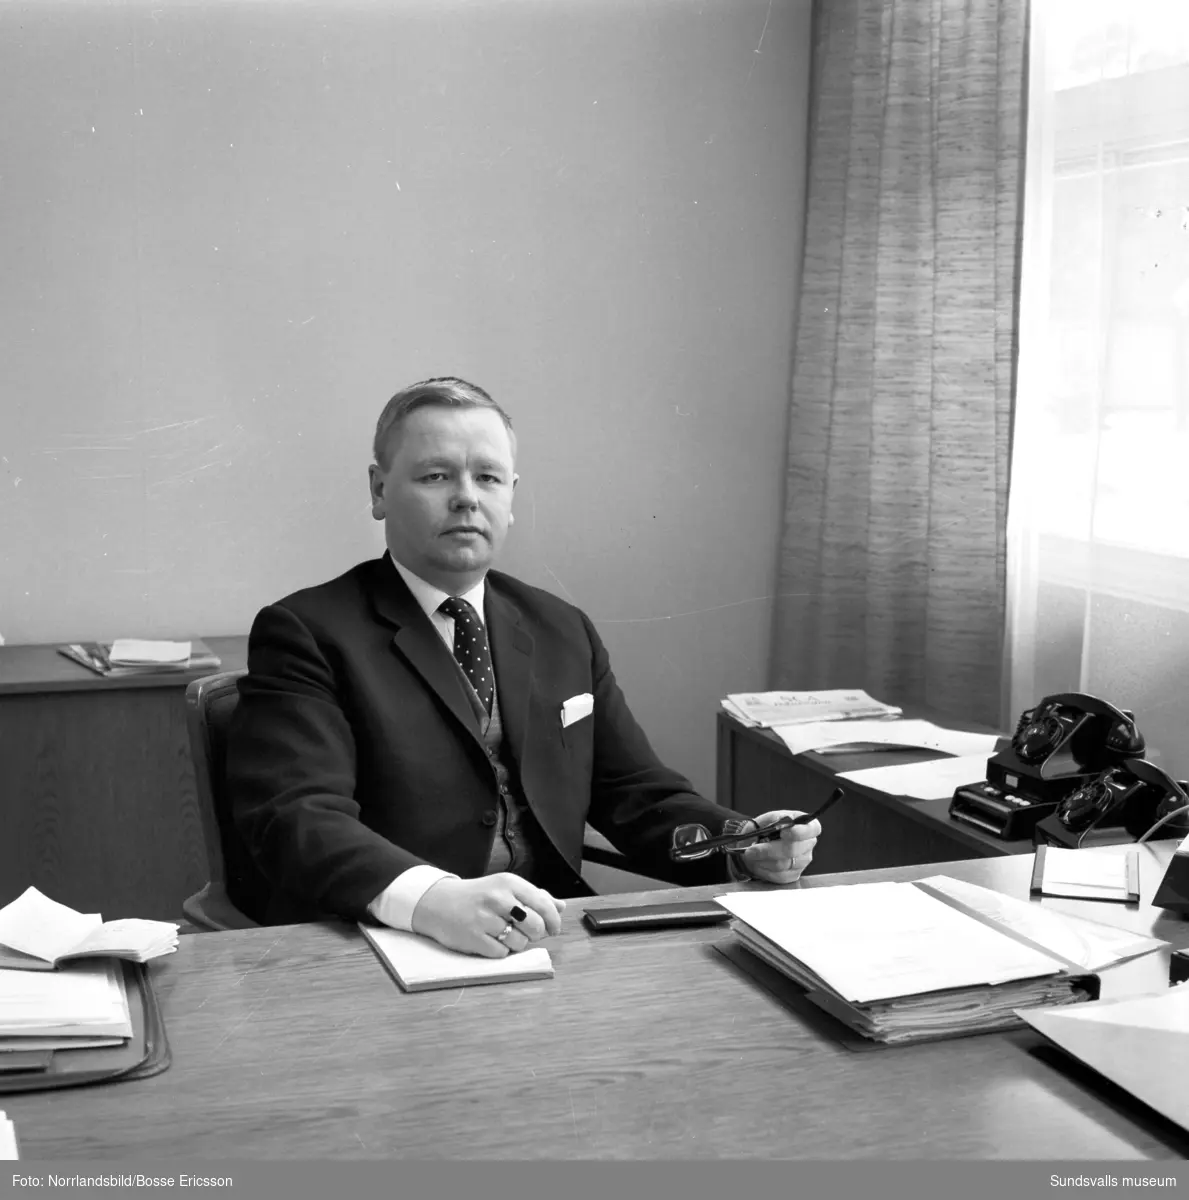 Direktör Olof Lindbäck på sitt kontor vid Södra Allén, SDC, Skogsbrukets datacentral.